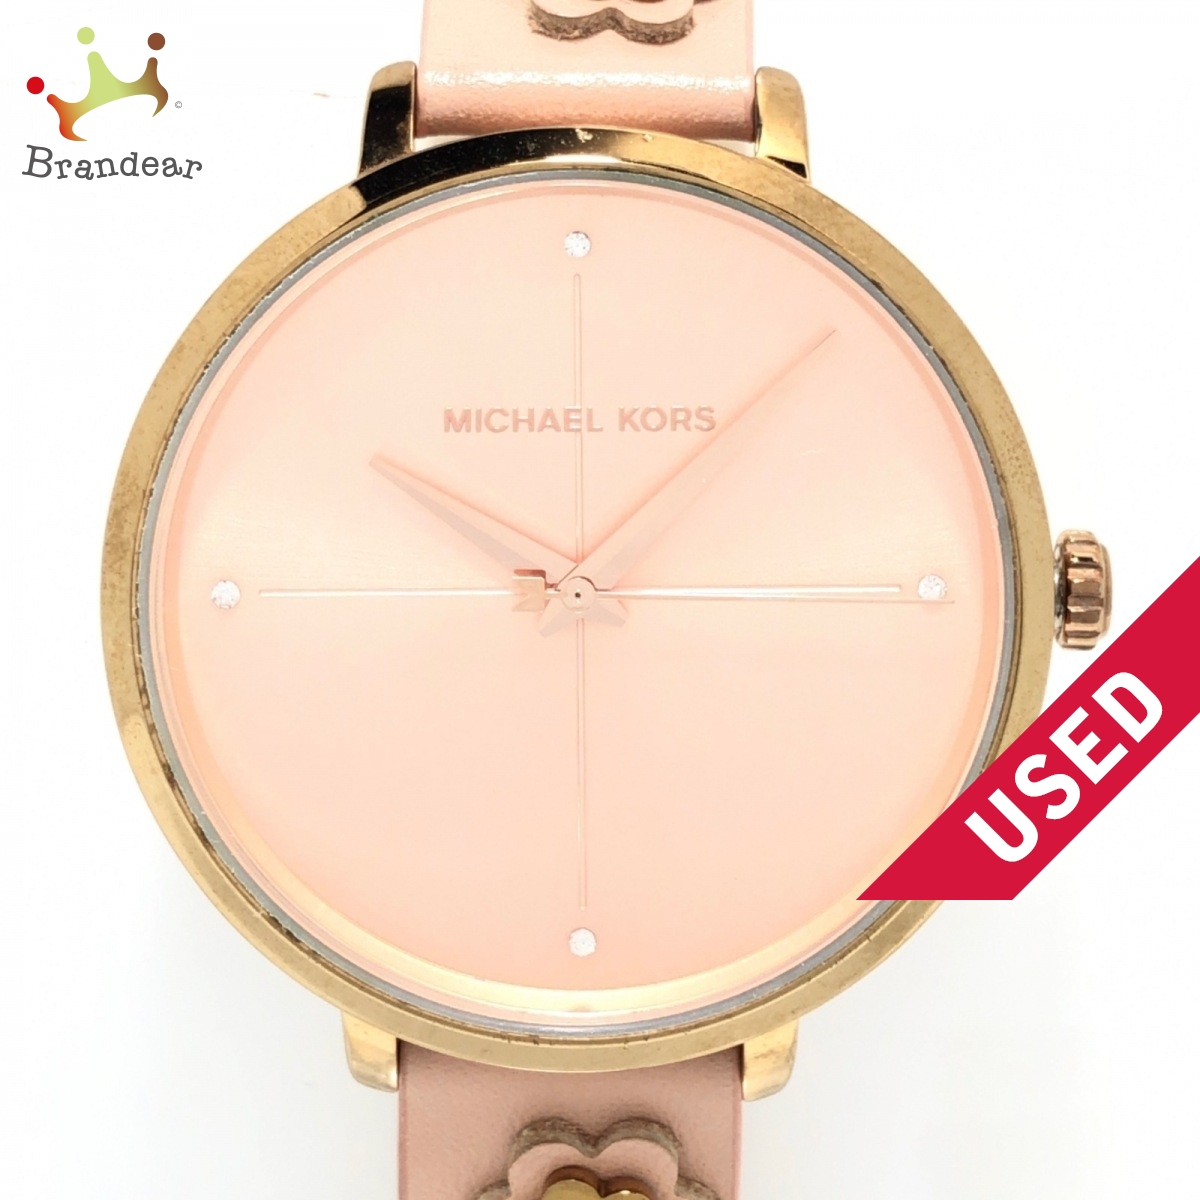 MICHAEL KORS(マイケルコース) 腕時計 フラワー(花) ピンクゴールド